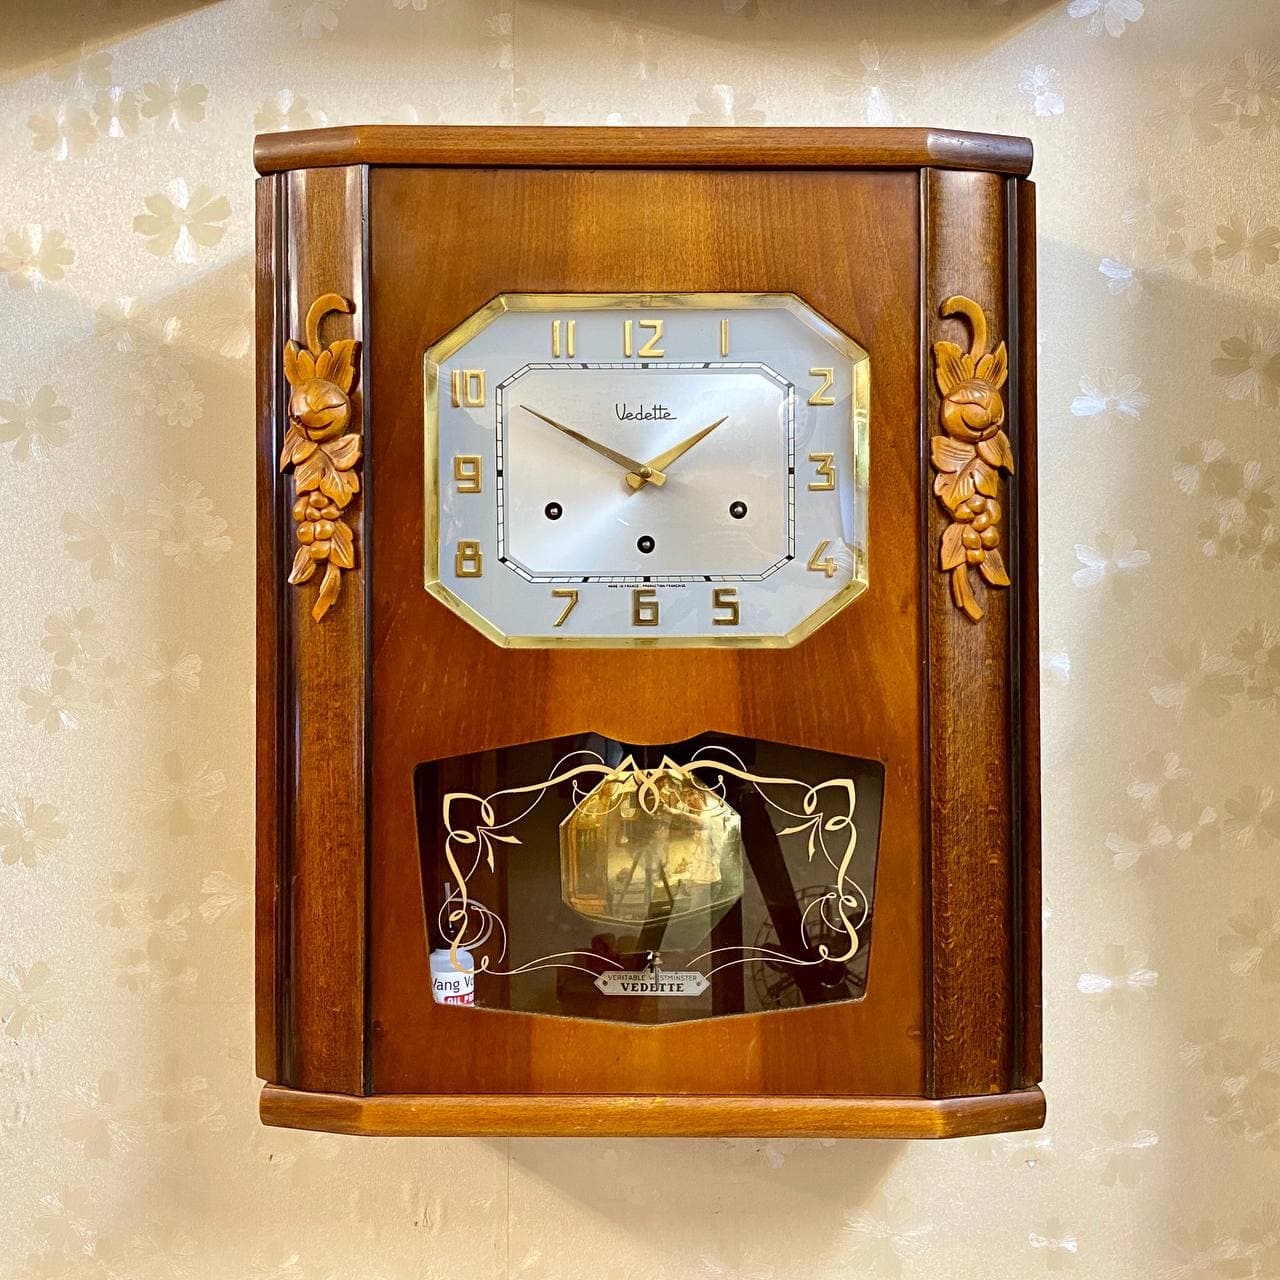 Đồng hồ Vedette thùng bè số nổi vàng sang trọng